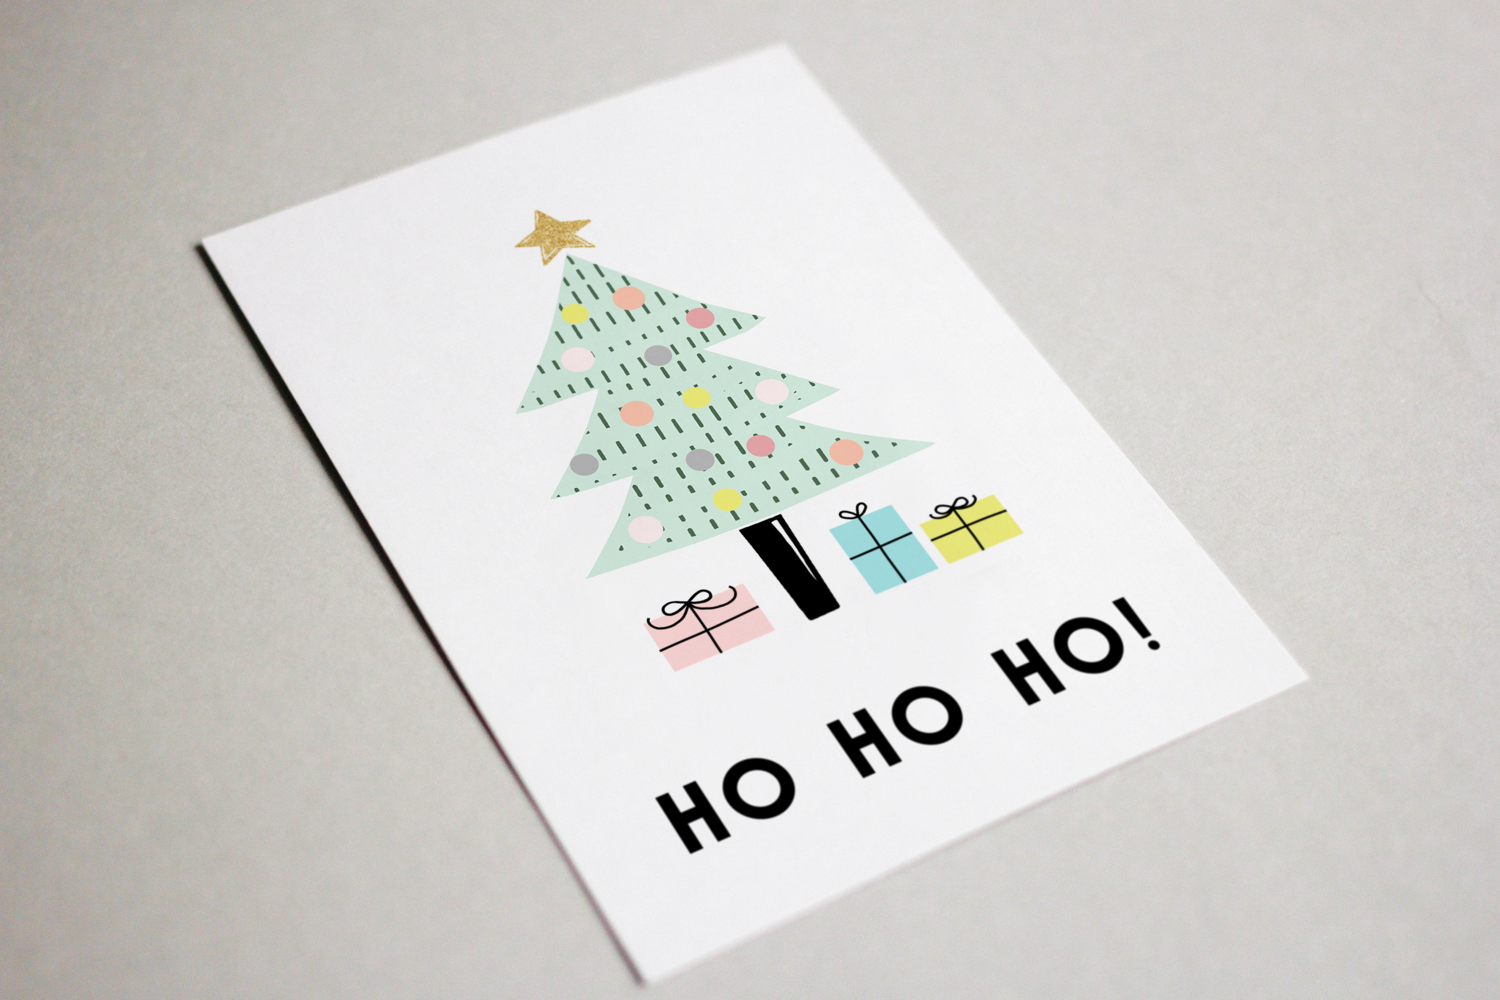 świąteczne zimowe pocztówki plakaty do pobrania do wydrukowania za darmo do druku cicha noc pastelowe za free poster christmas